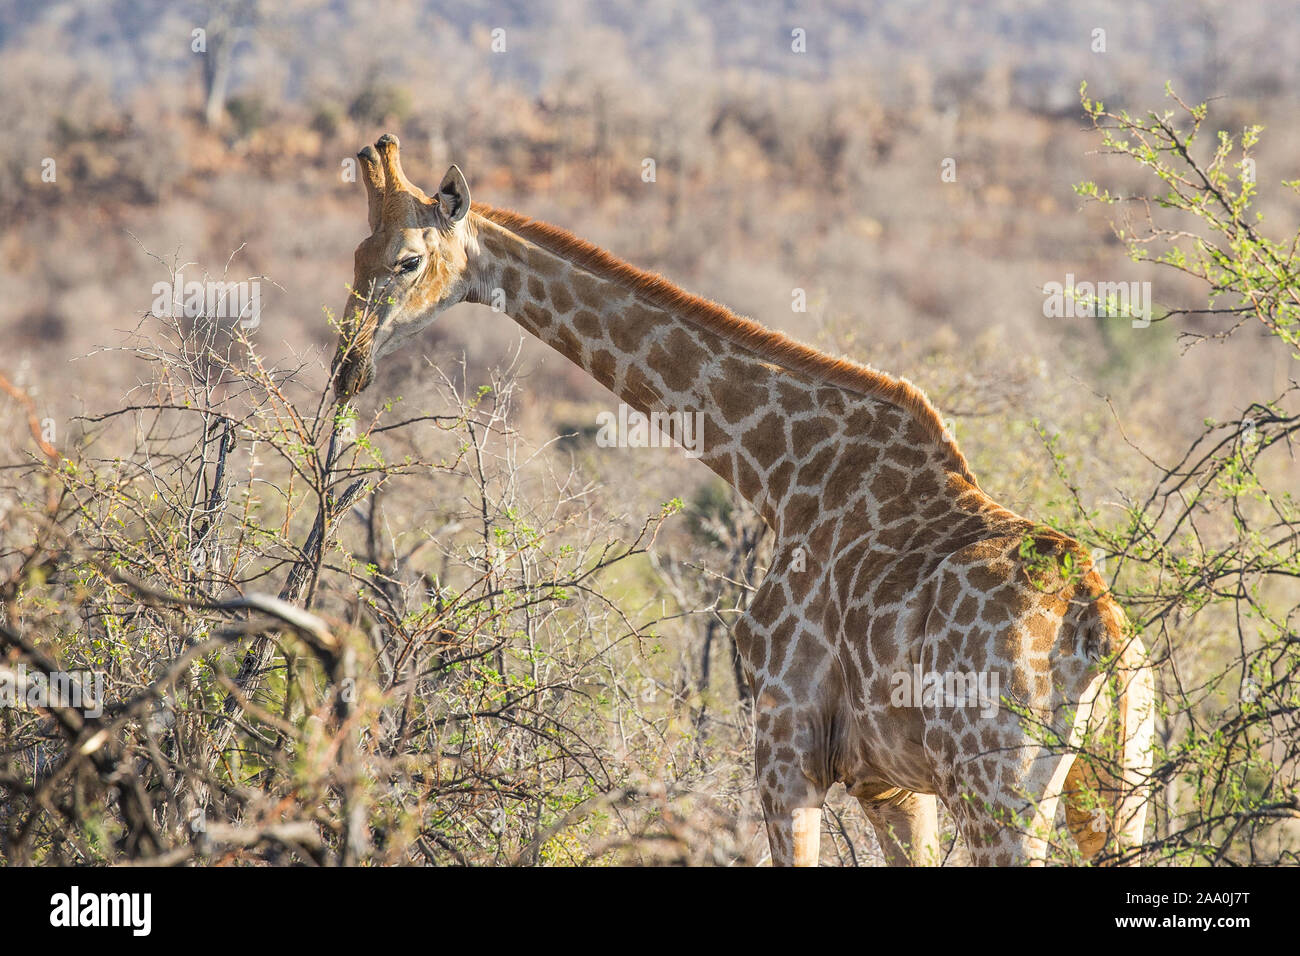 Giraffe in the trees on safari Stock Photo